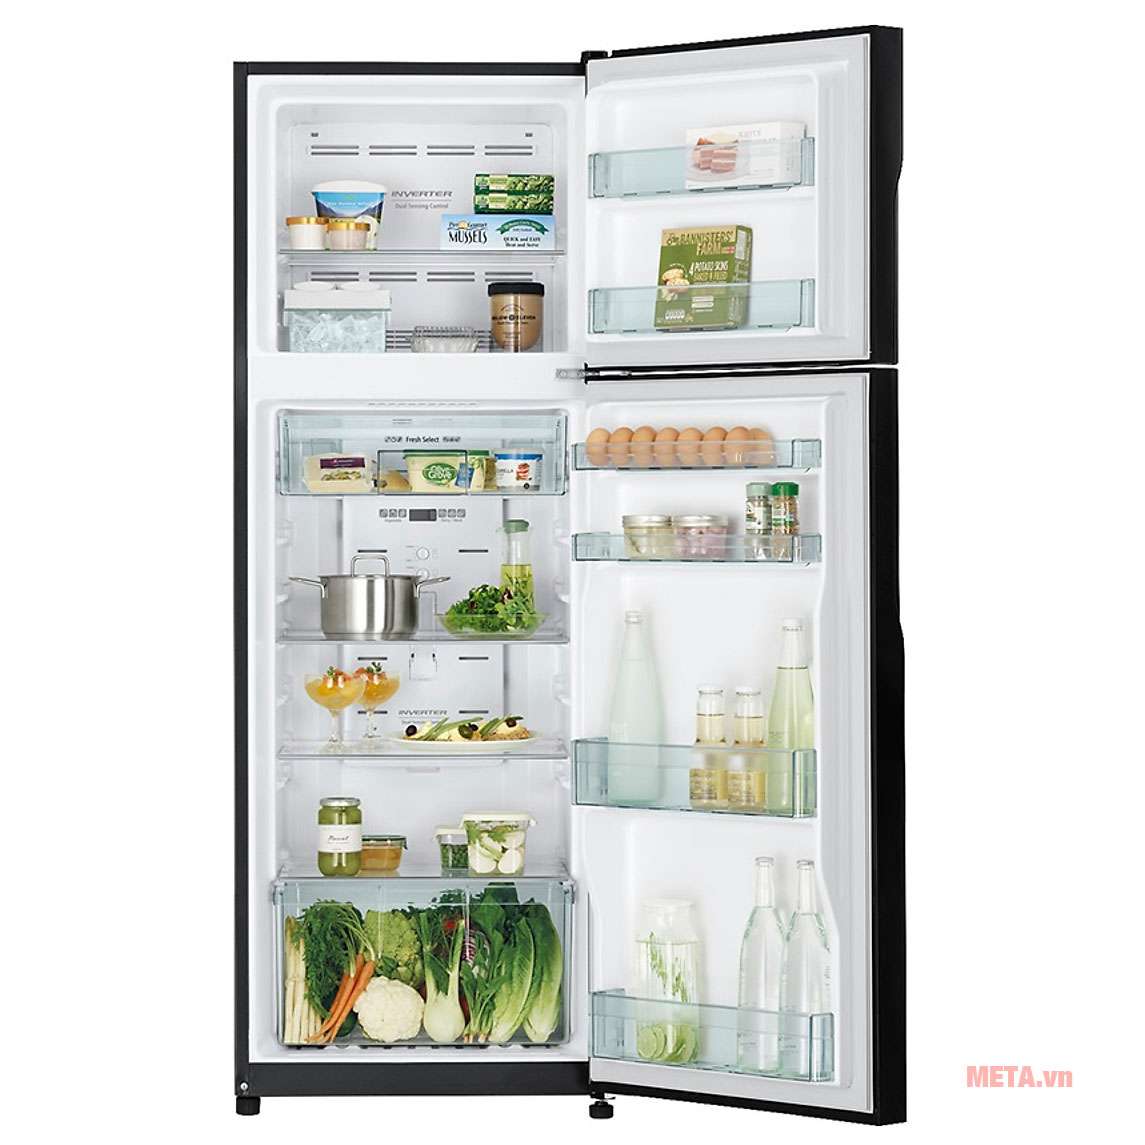 Tủ lạnh Inverter Hitachi R-H310PGV7(BBK) với tổng dung tích 260 lít